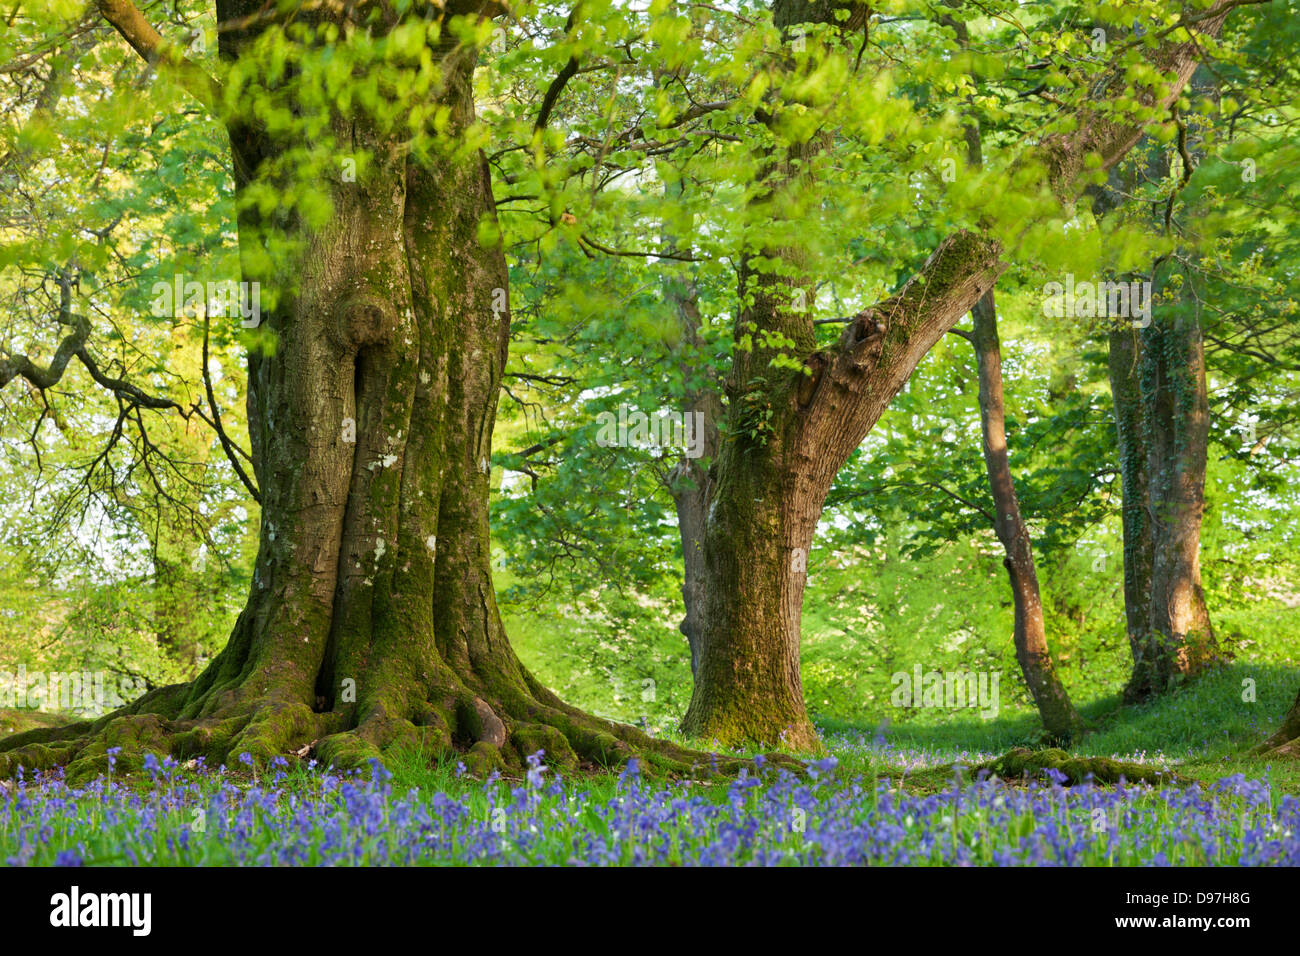 Hêtre et chêne arbre au-dessus d'un tapis de jacinthes des bois, dans un camp de Blackbury, Devon, Angleterre. Printemps (mai) 2012. Banque D'Images